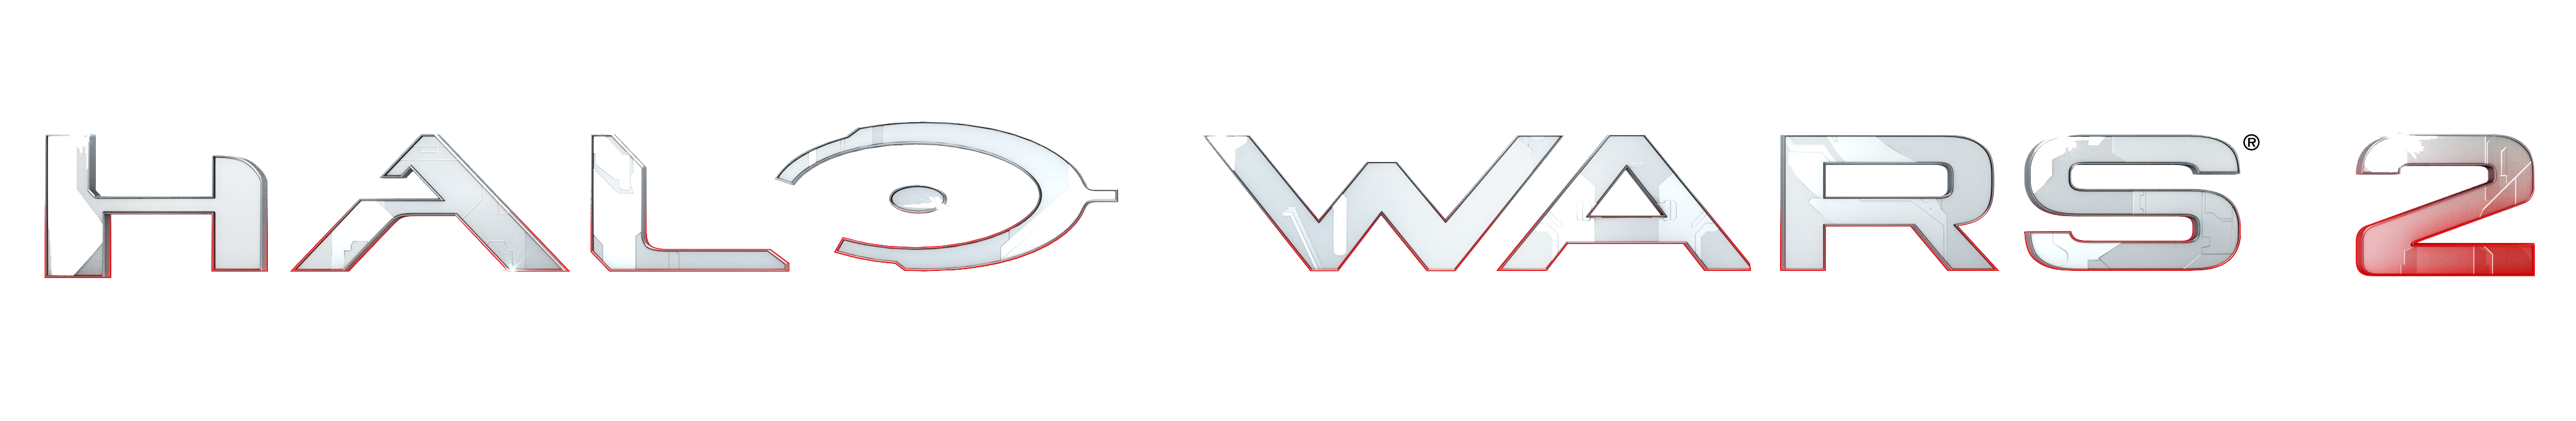 Download PNG image - Halo Wars Logo Transparent PNG 